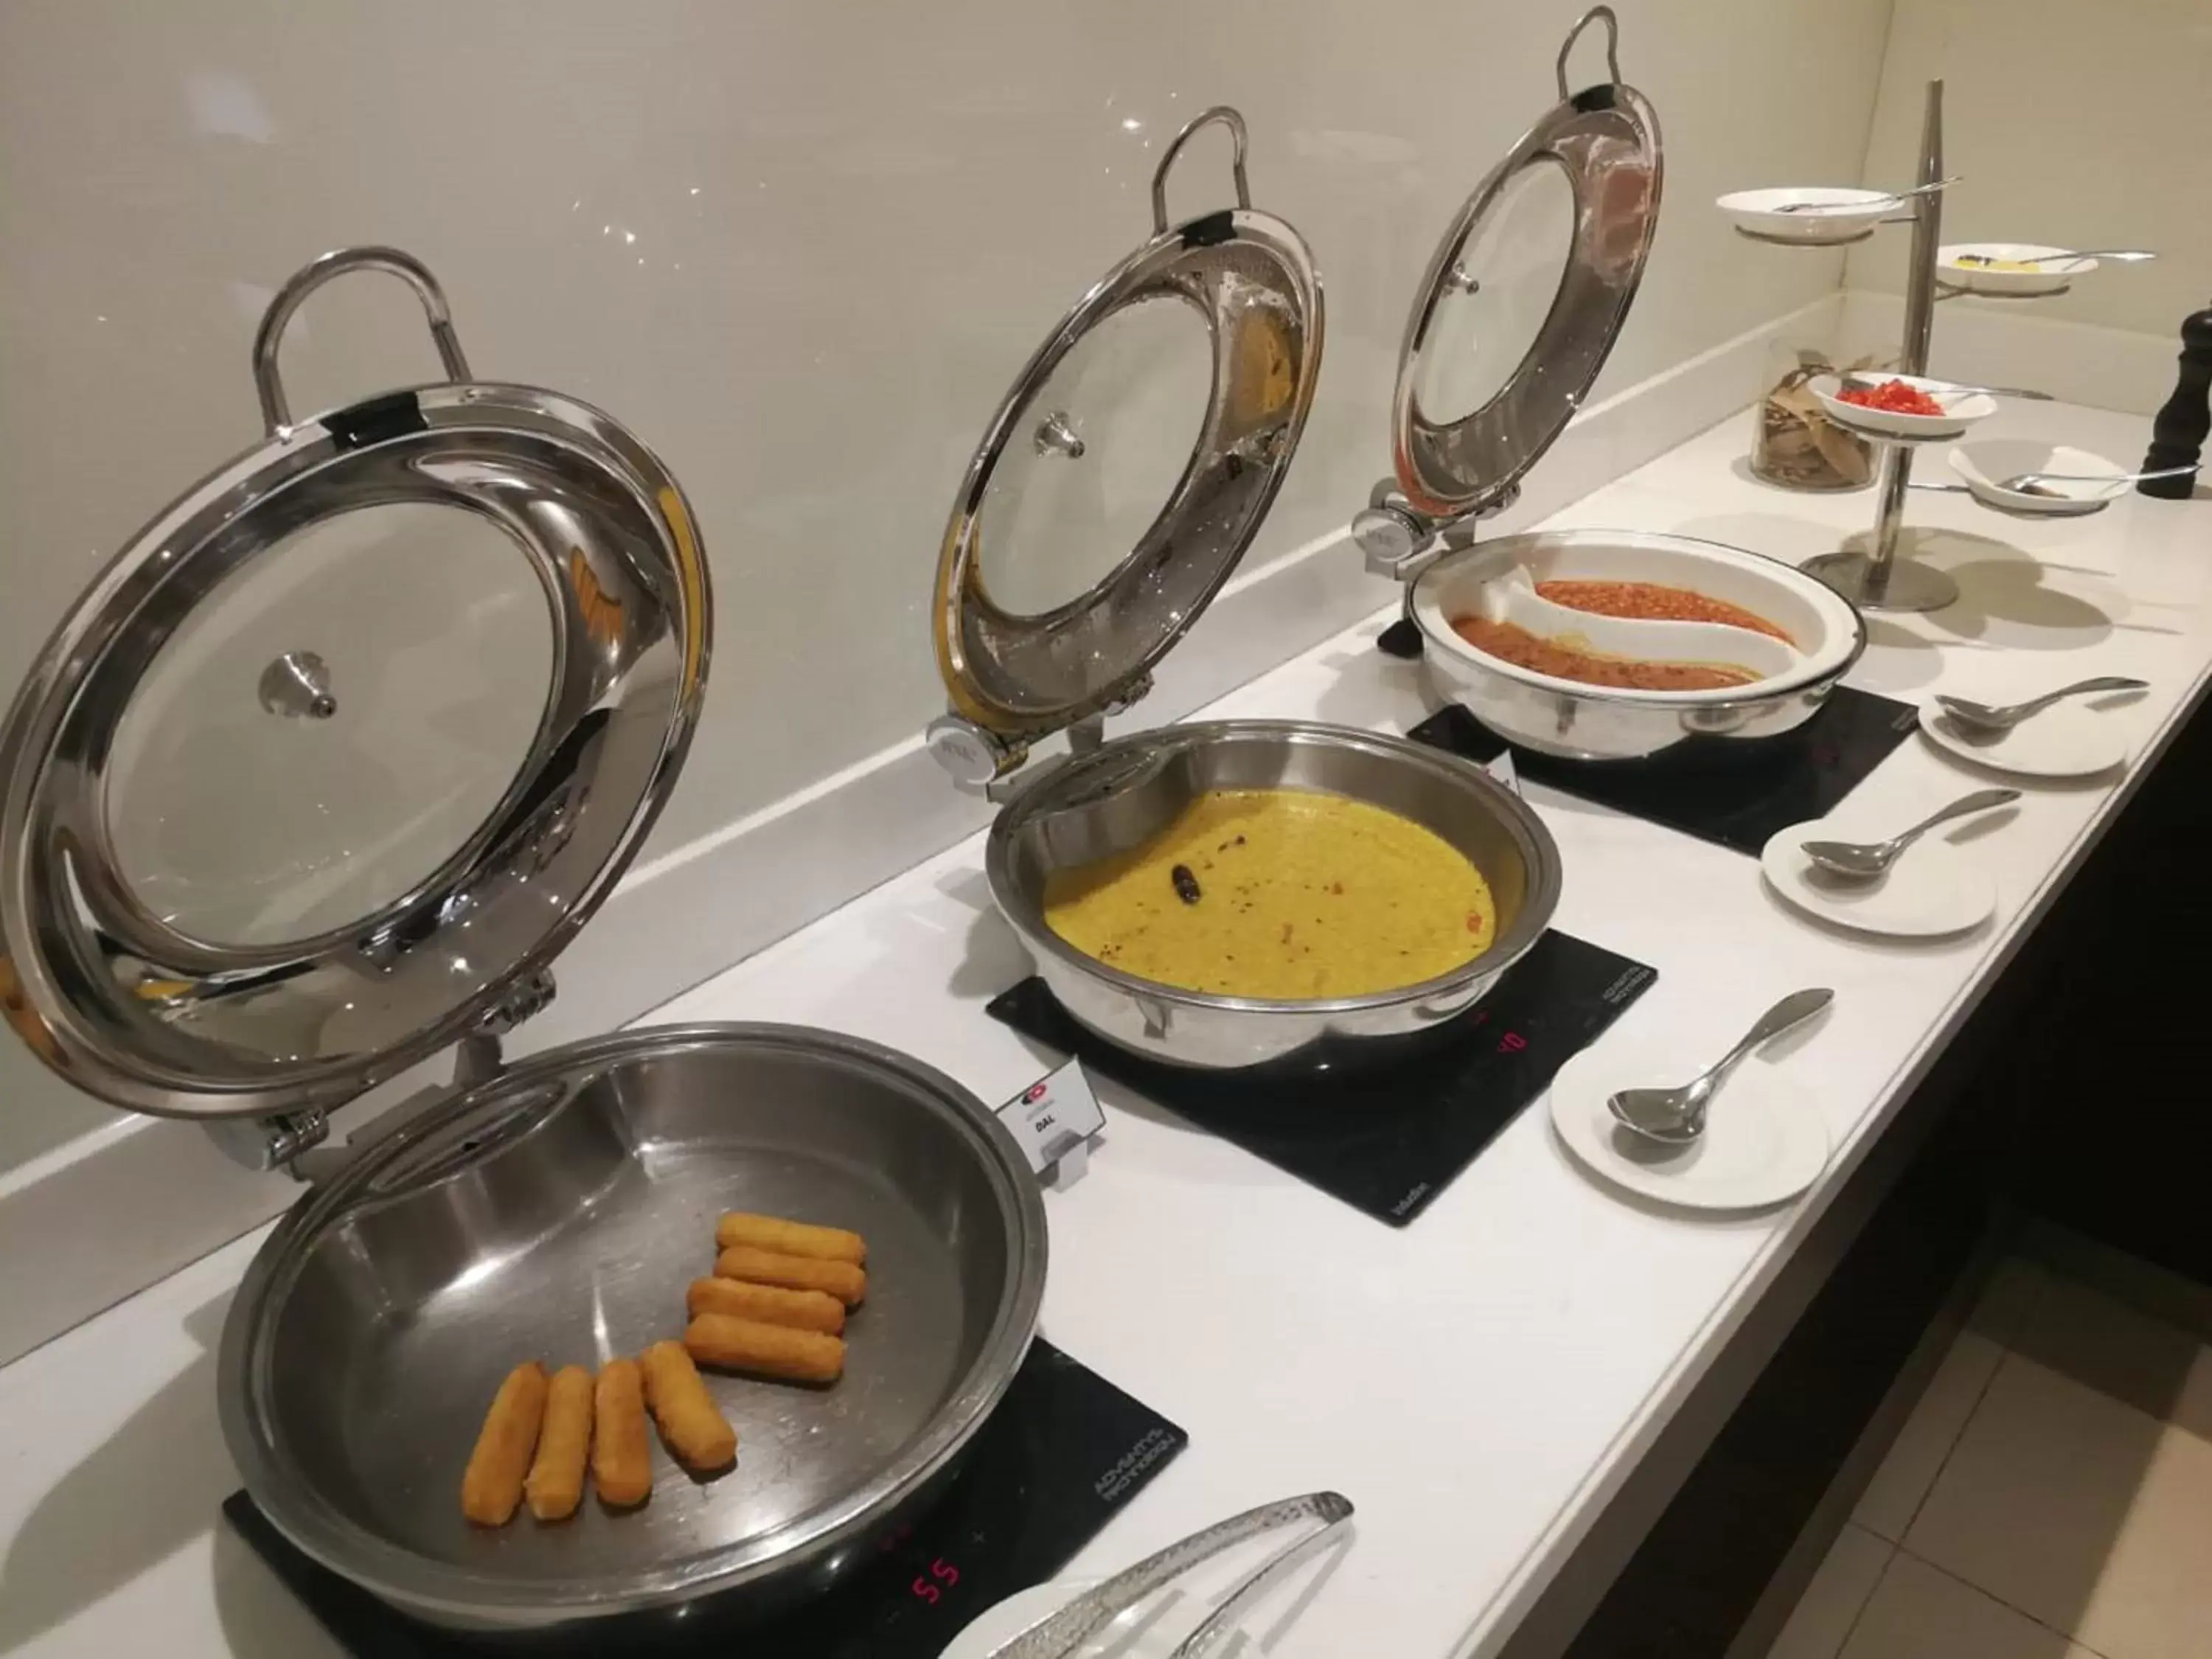 Buffet breakfast in Action Hotel Ras Al Khaimah